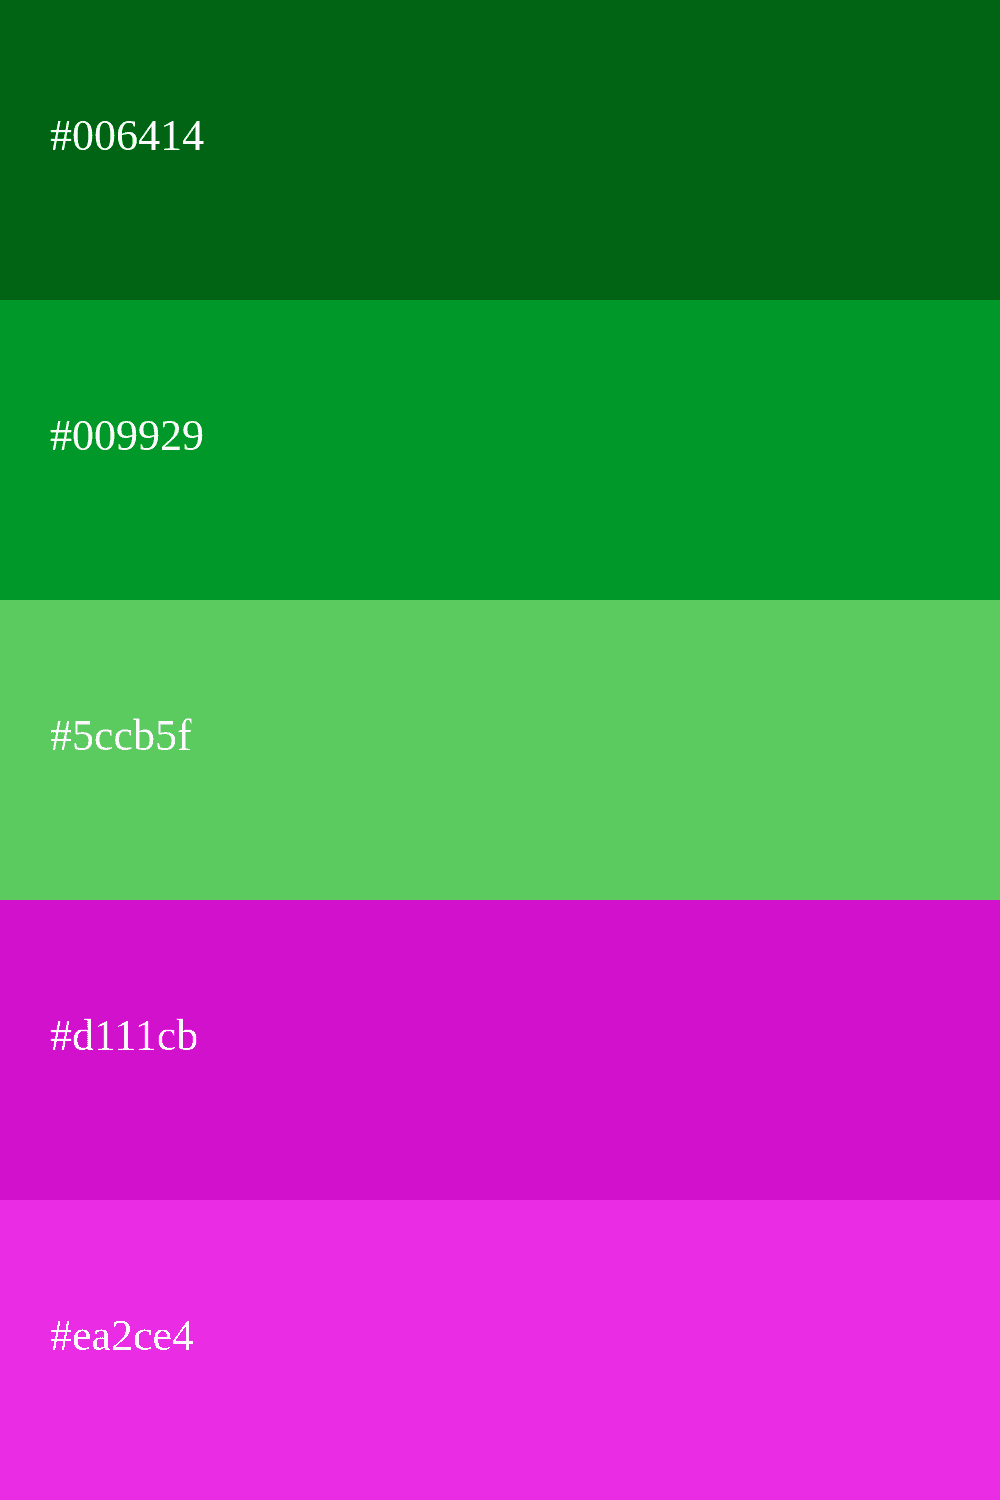 cor verde e roxa